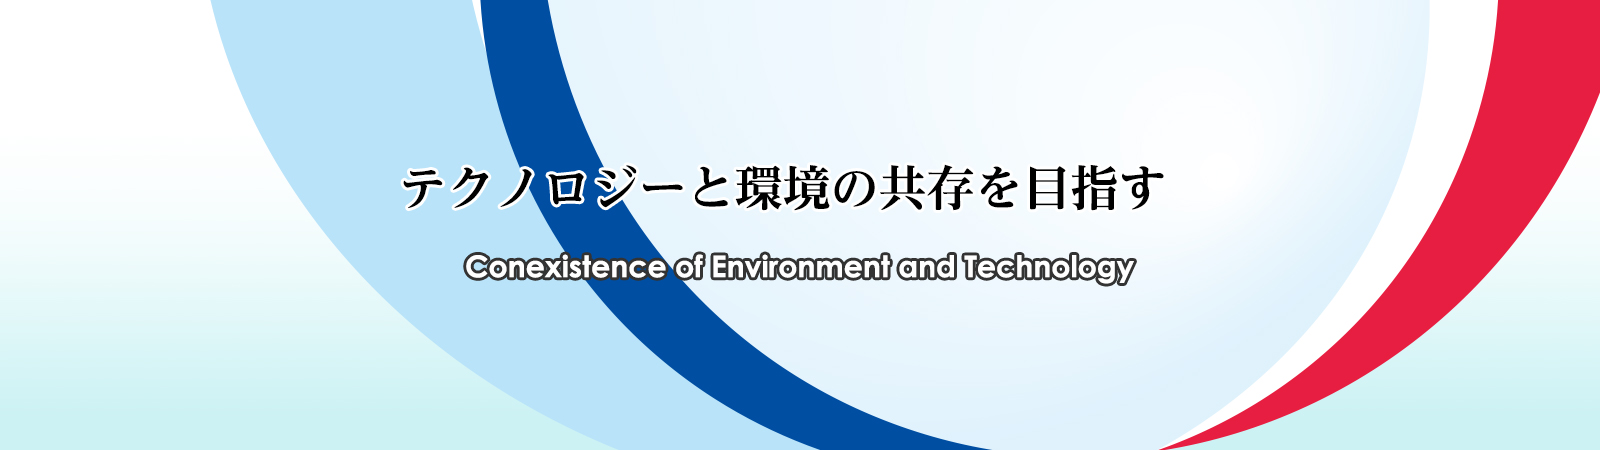 テクノロジーと環境の共存を目指す Conexistence of Environment and Technology